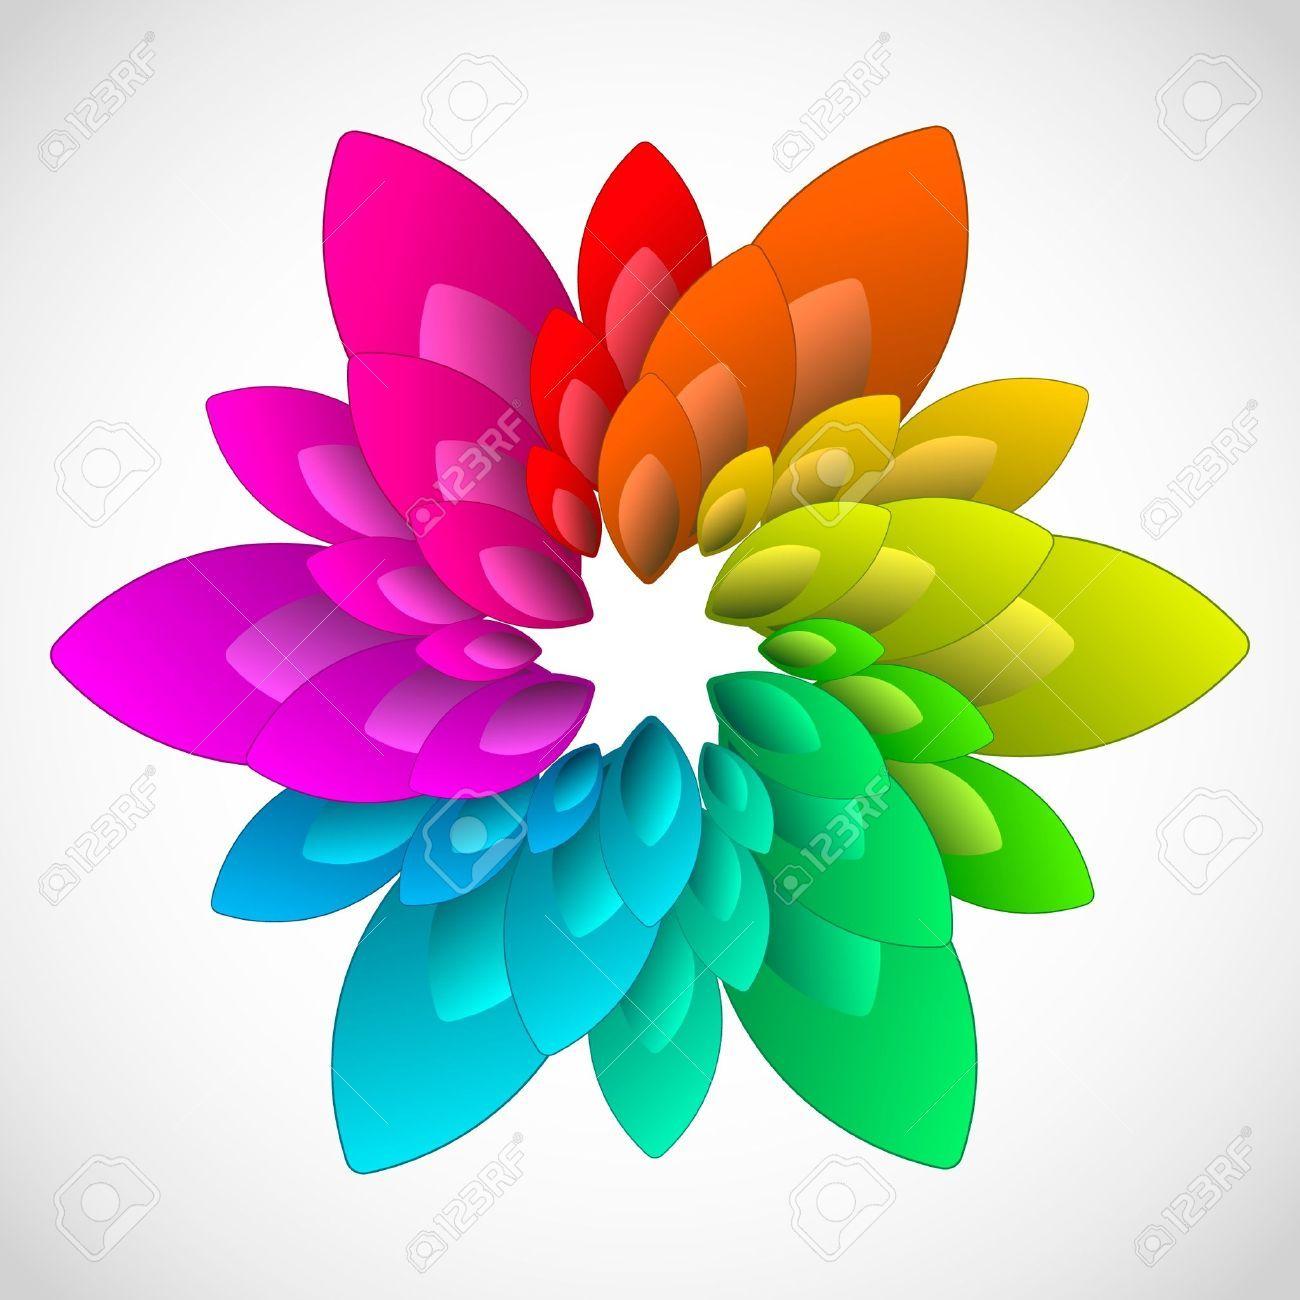 Rainbow Flower Logo - Rainbow Flower Clipart. Free download best Rainbow Flower Clipart